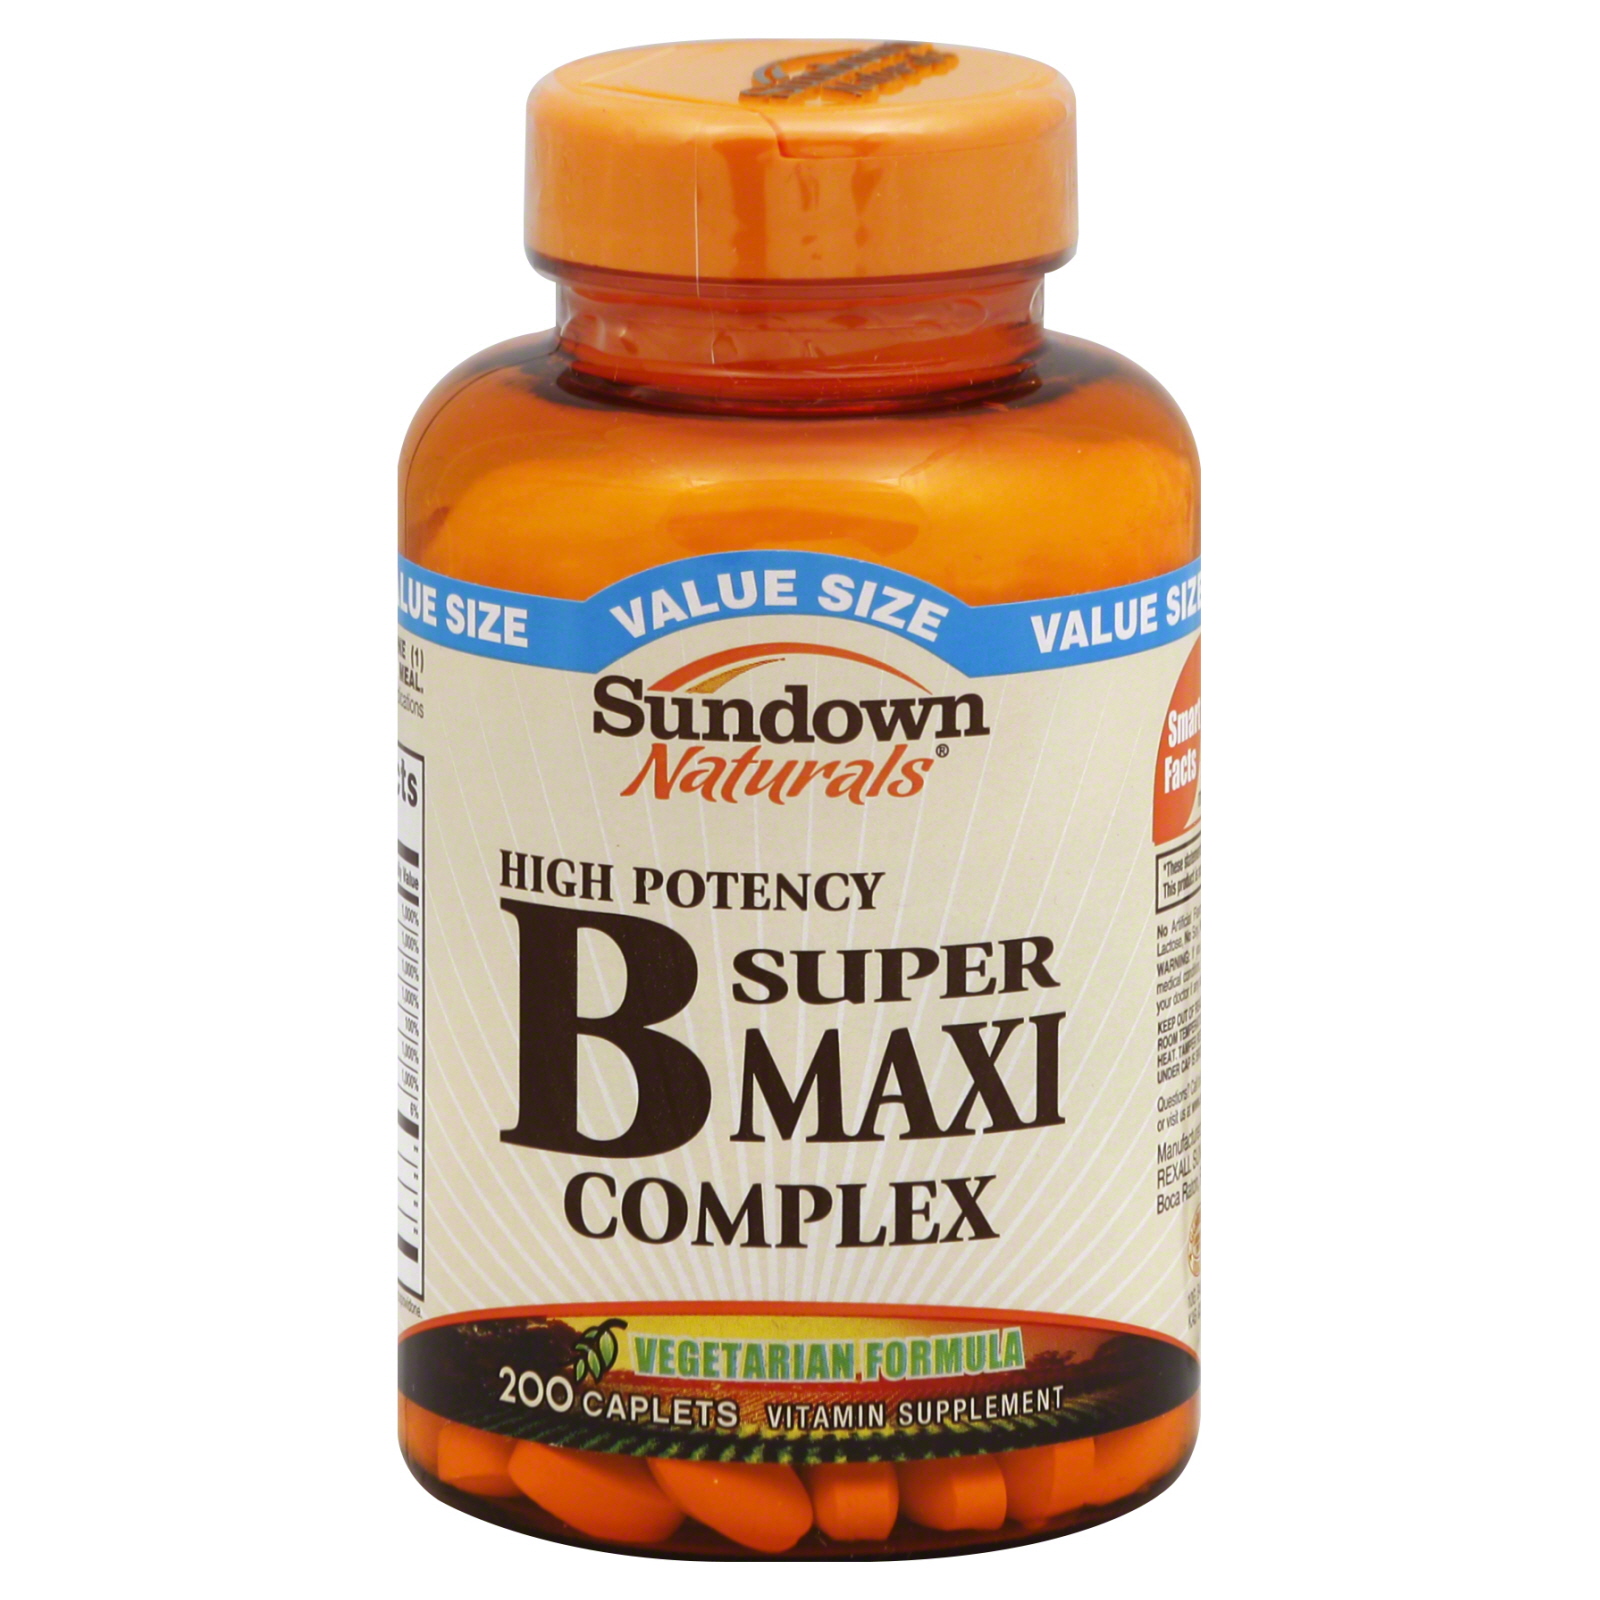 Sundown Naturals Vitamin B Complex, Super Maxi, Caplets, Value Size, 200 caplets